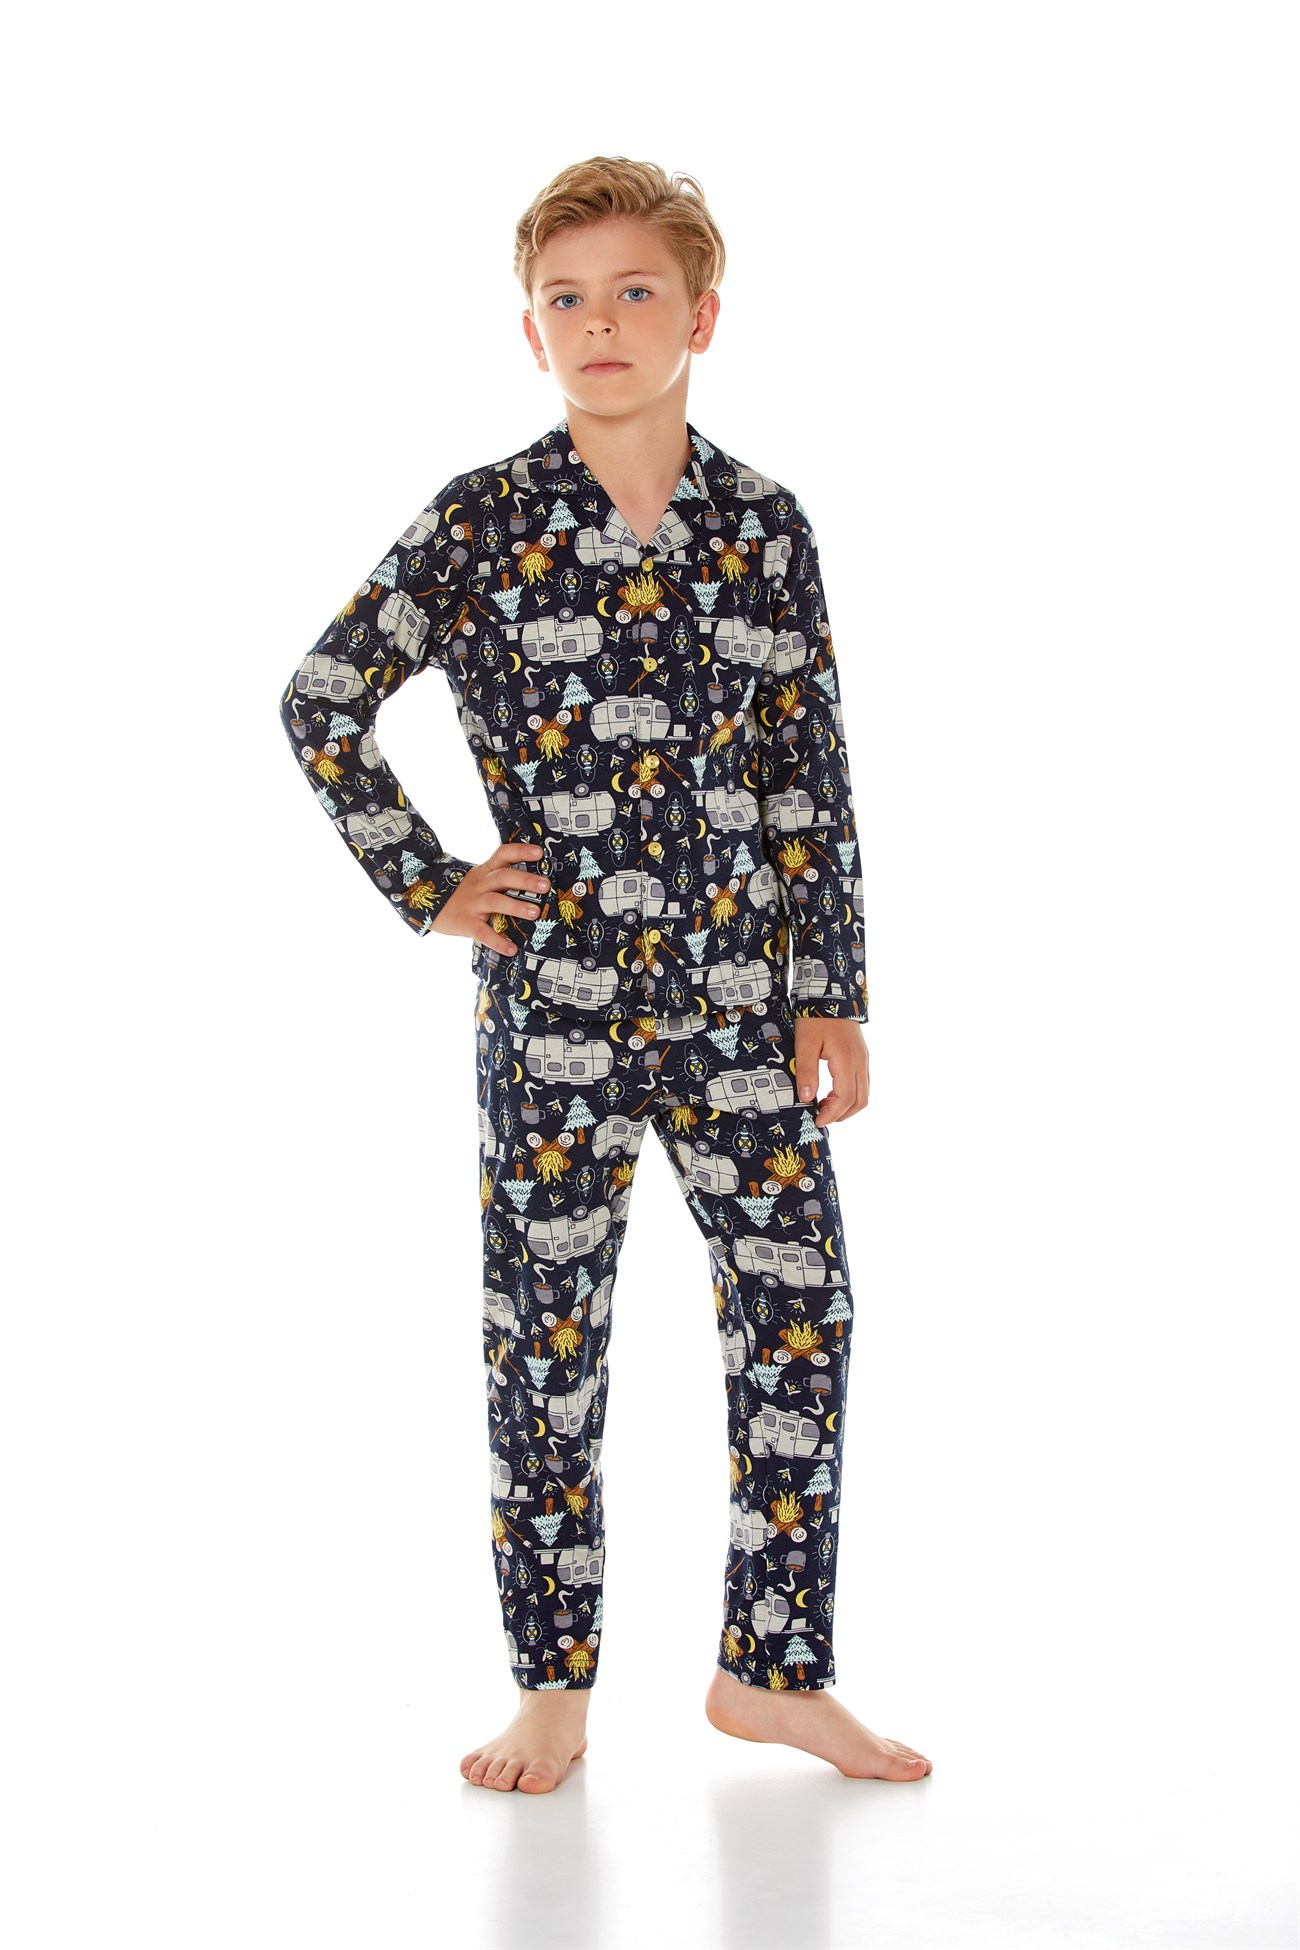 Baykar Erkek Çocuk Uzun Kollu Pijama Takımı 9651 Siyah